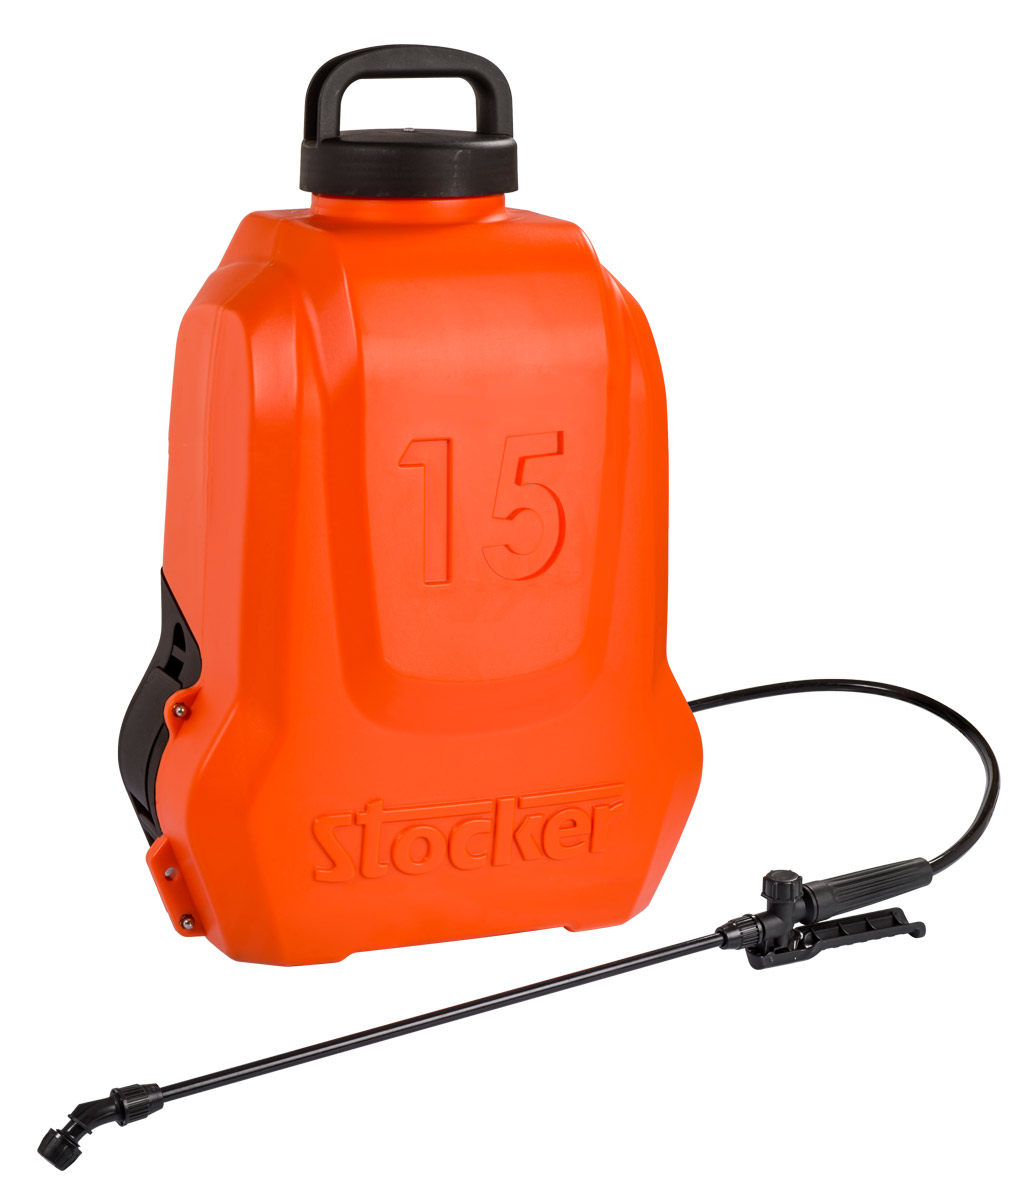 Pompa irroratrice a zaino a pressione manuale Stocker 16 lt - Pompante e  meccanismi in ottone, serbatoio in plastica dura